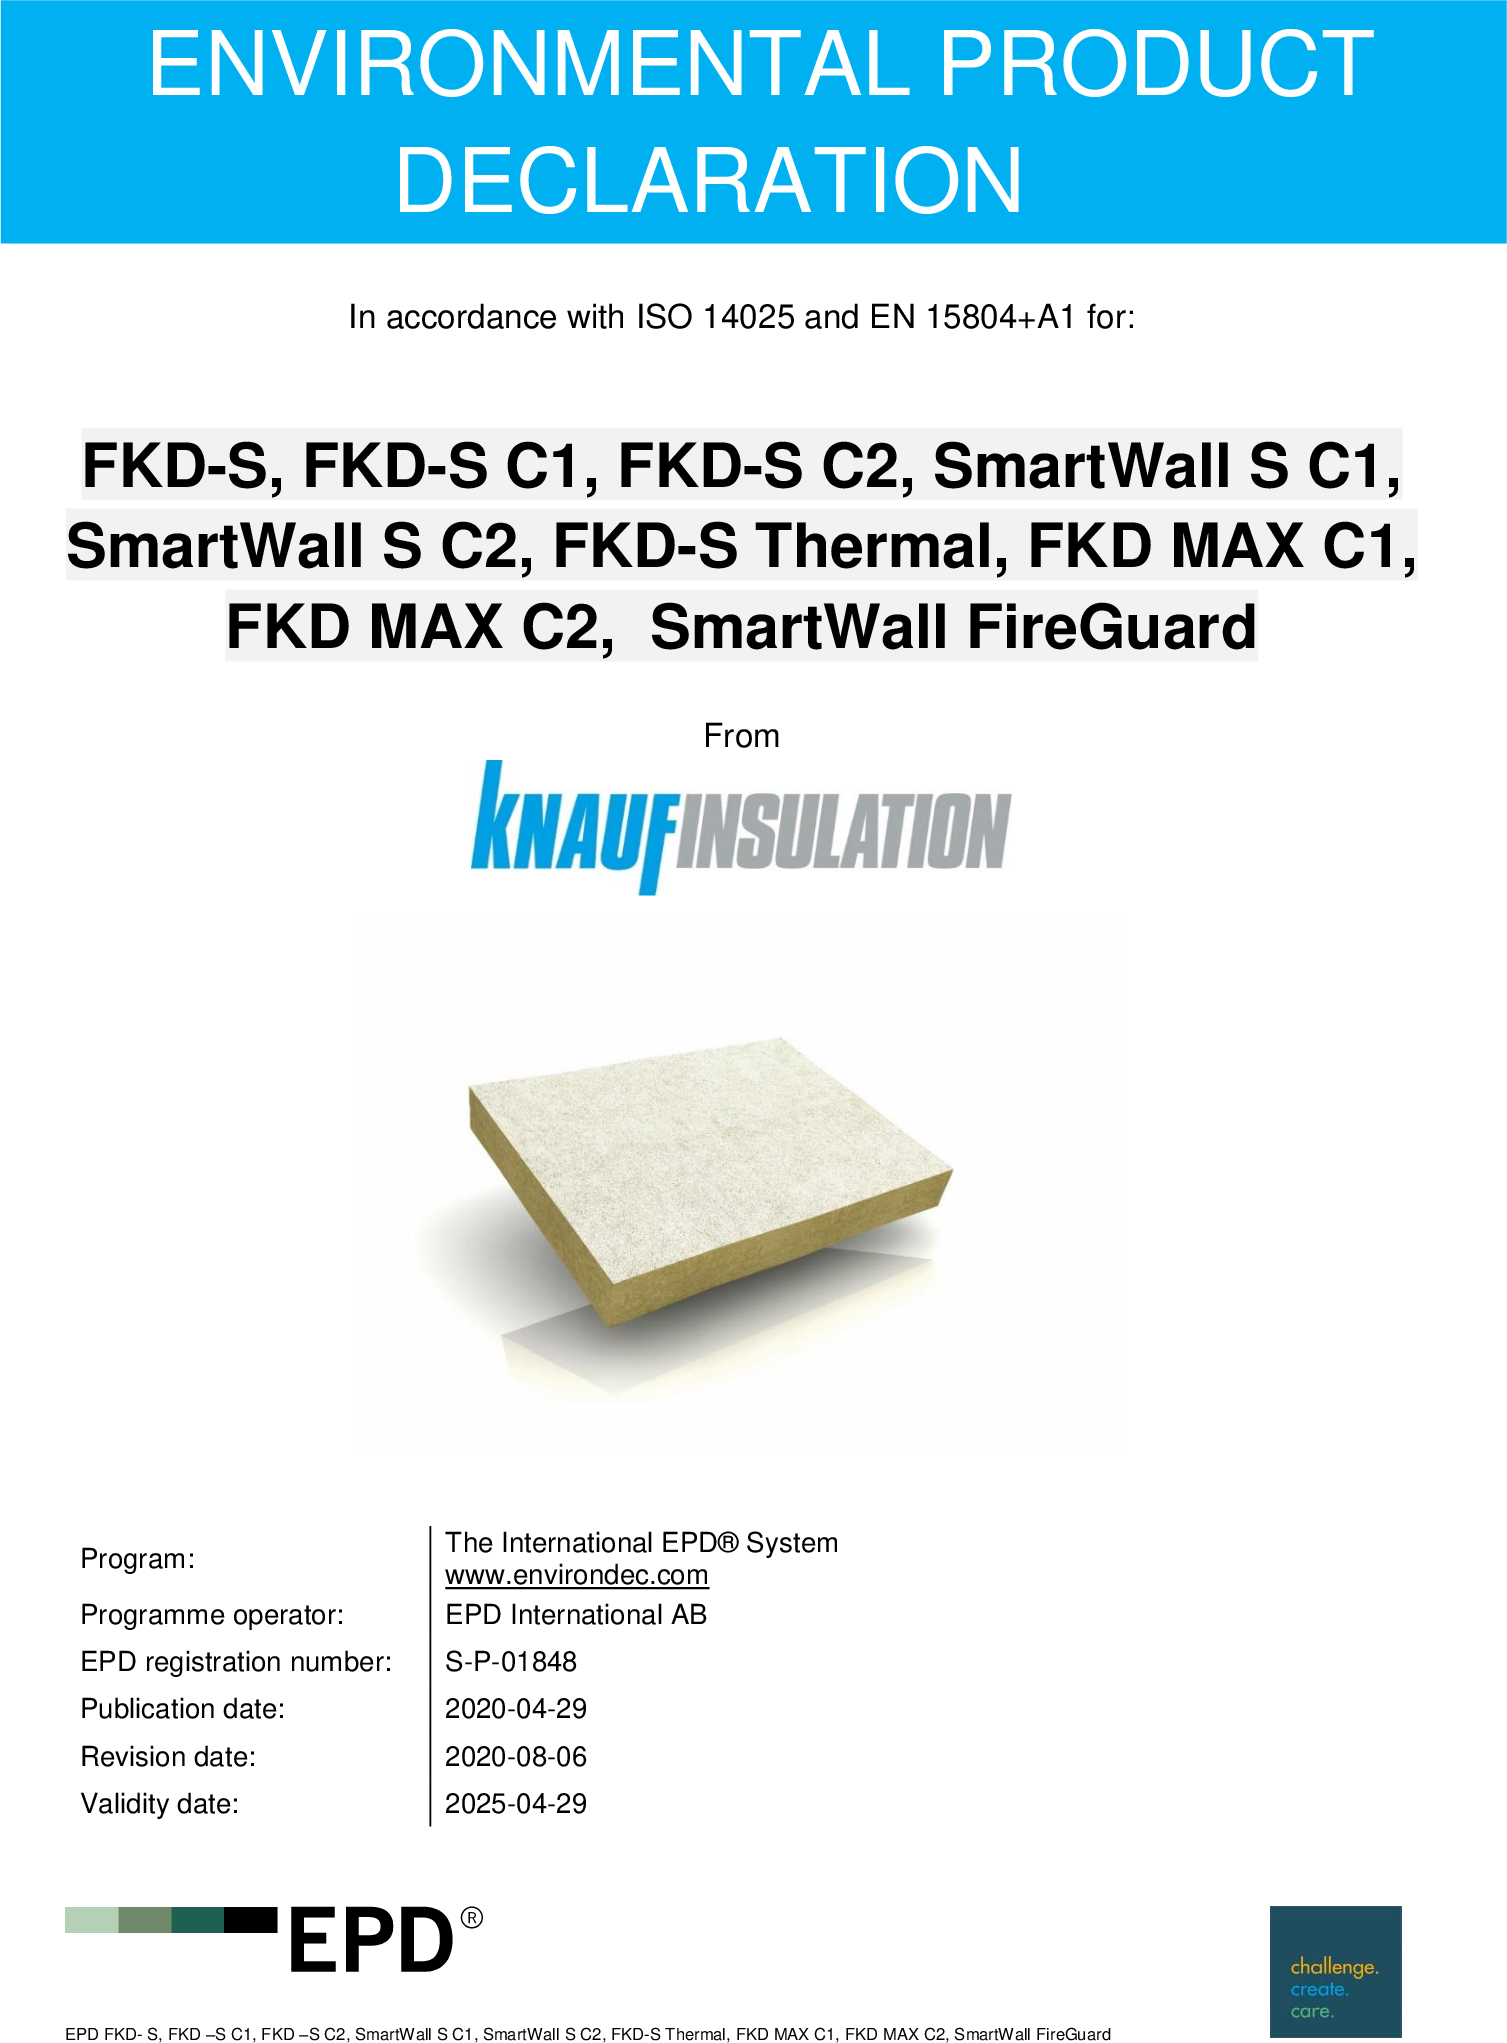 FKD-S, FKD-S C1, FKD-S C2, SmartWall S C1, SmartWall S C2, FKD-S Thermal, FKD MAX C1, FKD MAX C2, Sm